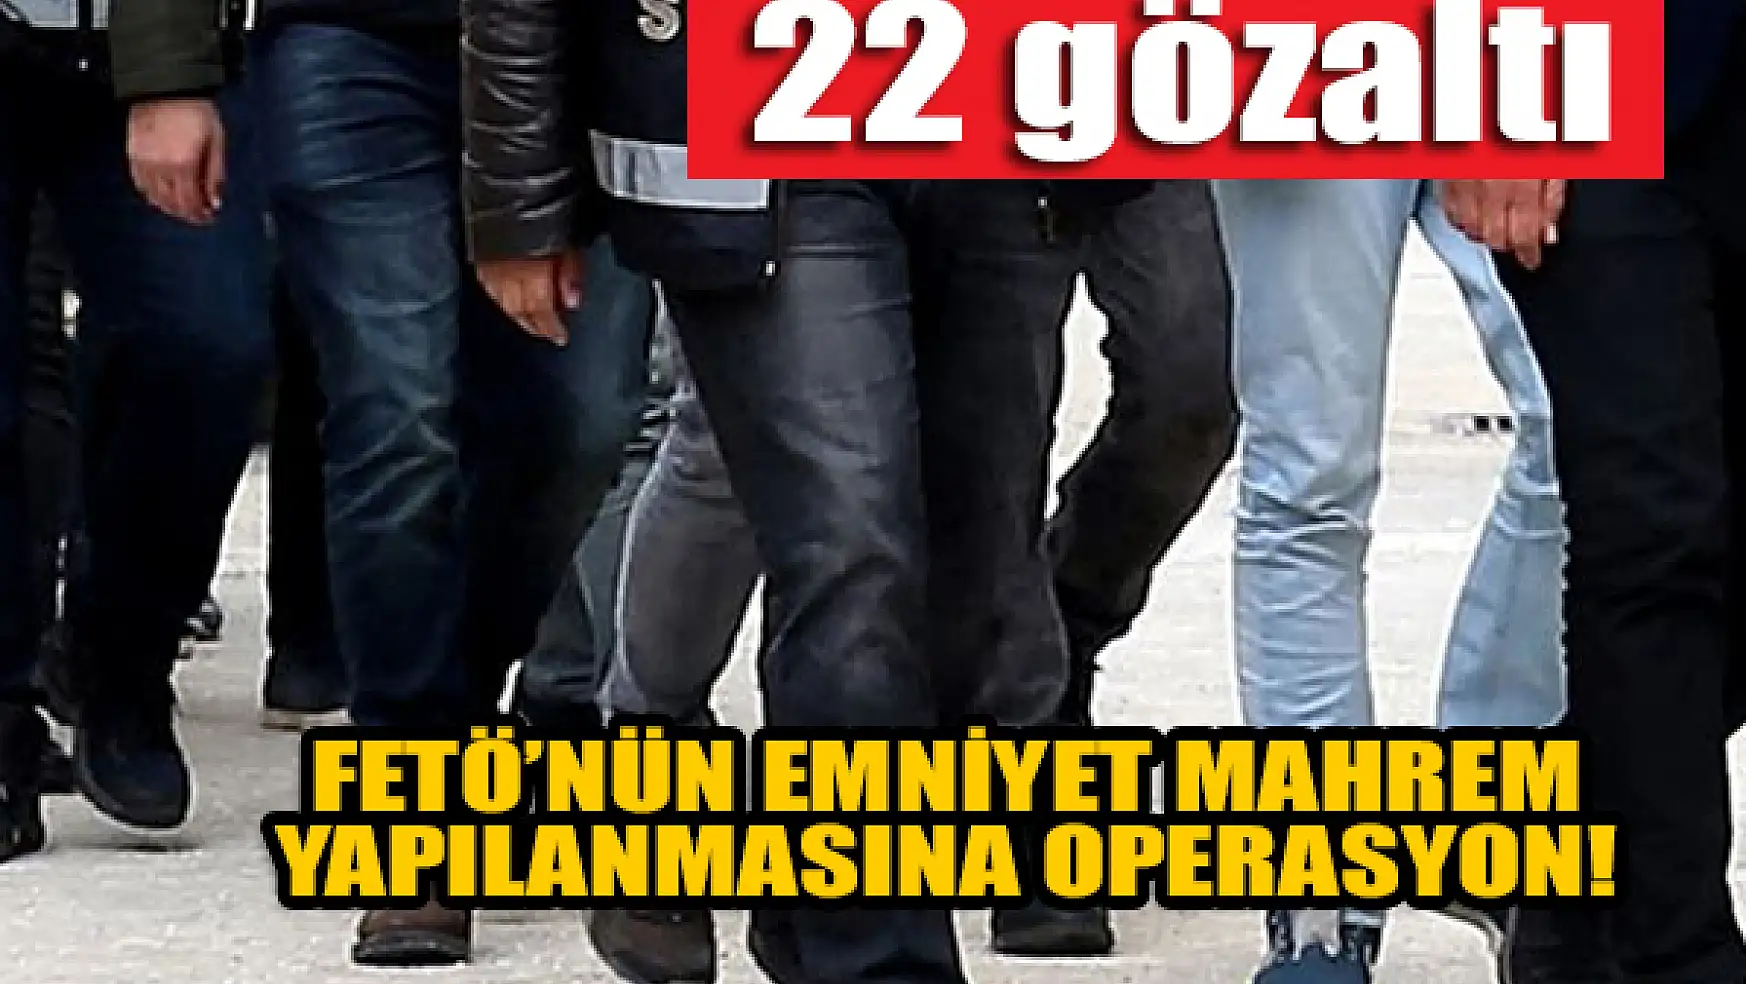 Konya dahil 8 ilde FETÖ'nün emniyet mahrem yapılanmasına operasyon: 22 gözaltı